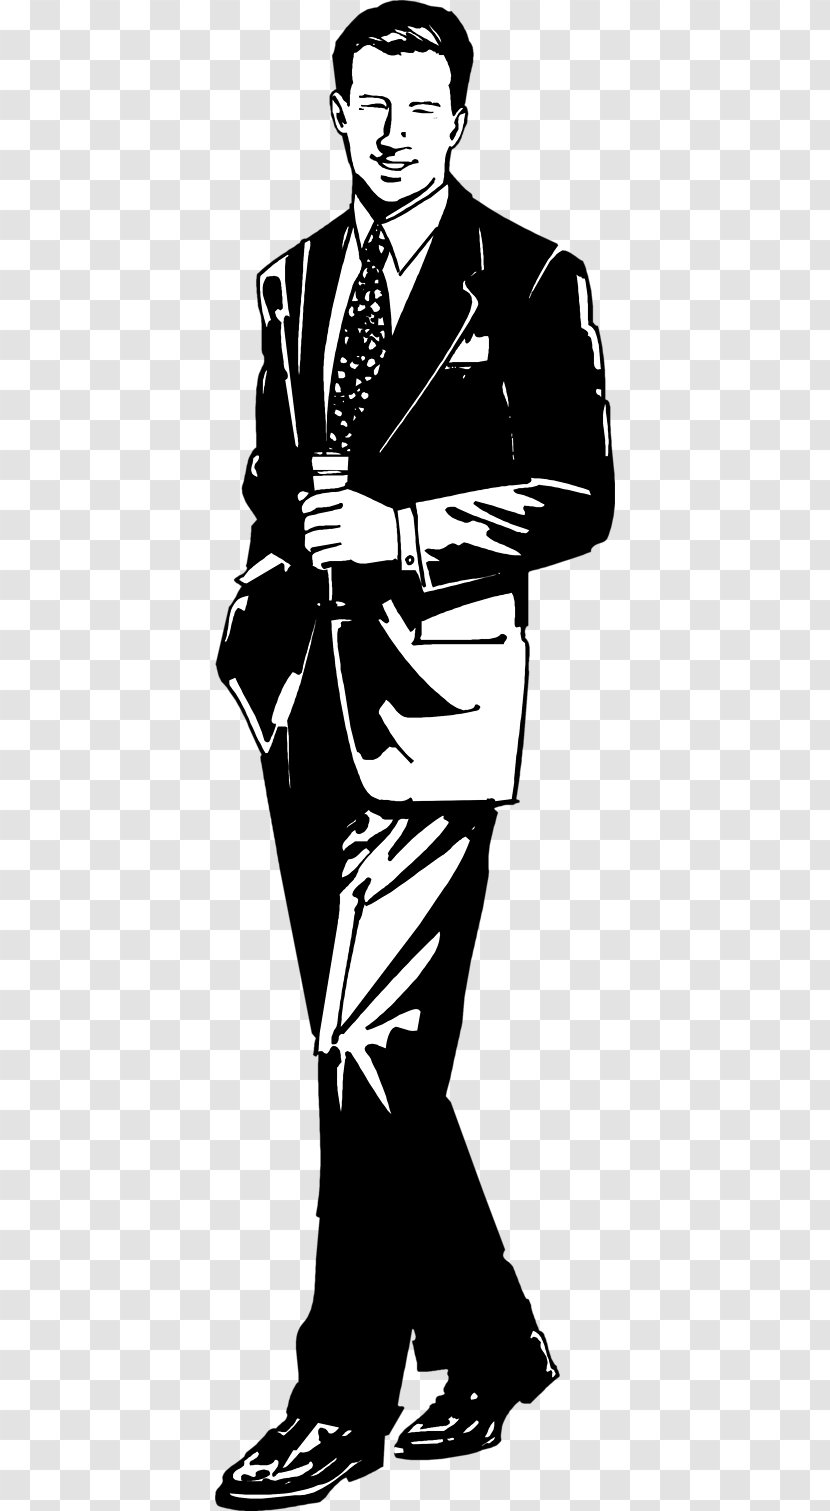 Anonymous Business Suit Clip Art at Clker.com - vector clip art online,  royalty free & public domain